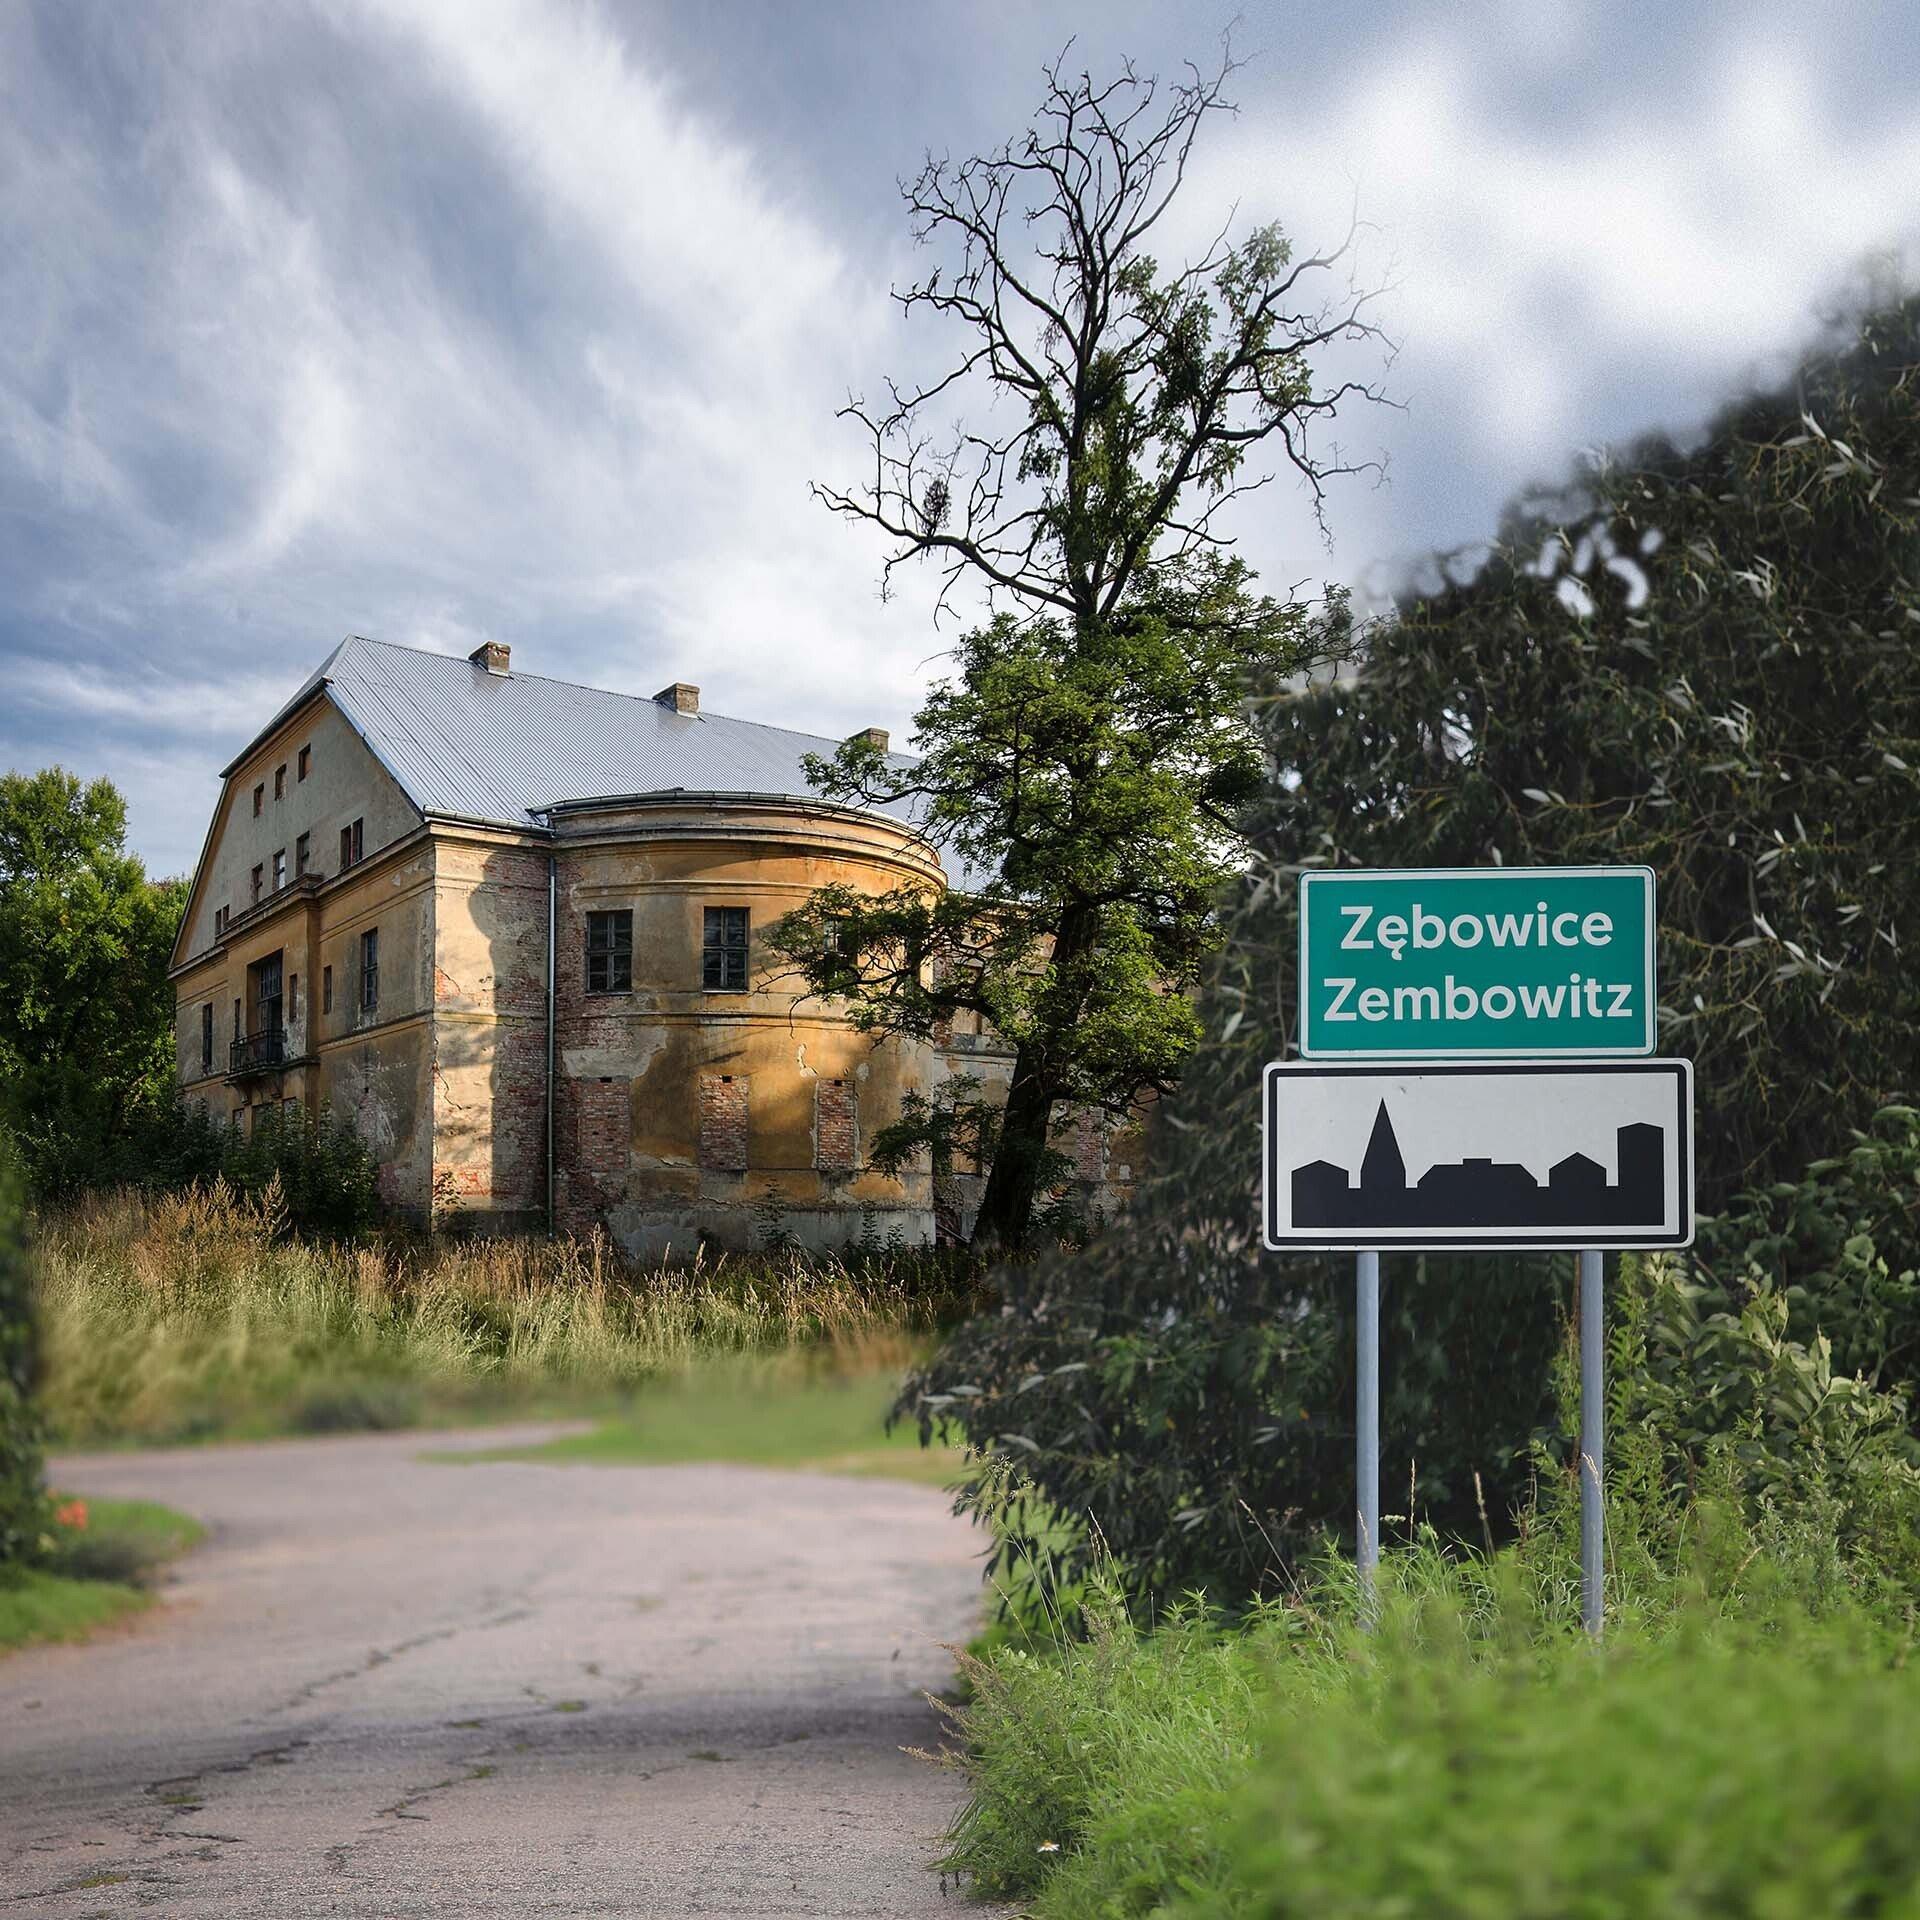 Zielona tablica z podwójną nazwą miejscowości: Zębowice i Zembowitz, w tle niszczejący pałac wśród zieleni.